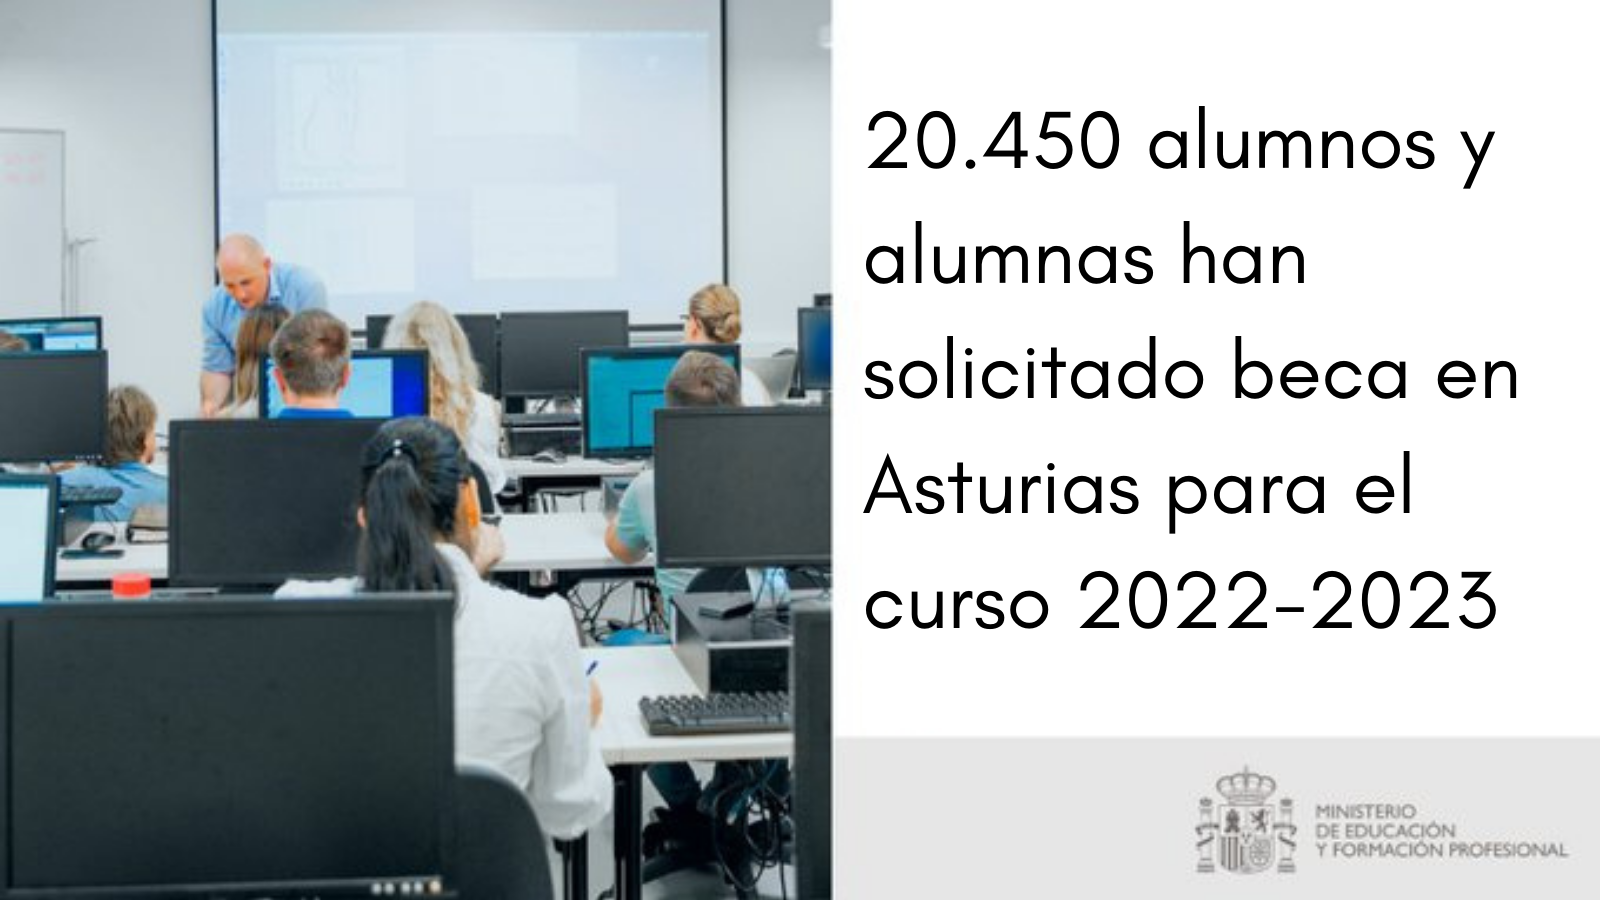 Más de 20.400 alumnos y alumnas en Asturias han solicitado una beca para el curso 2022-2023